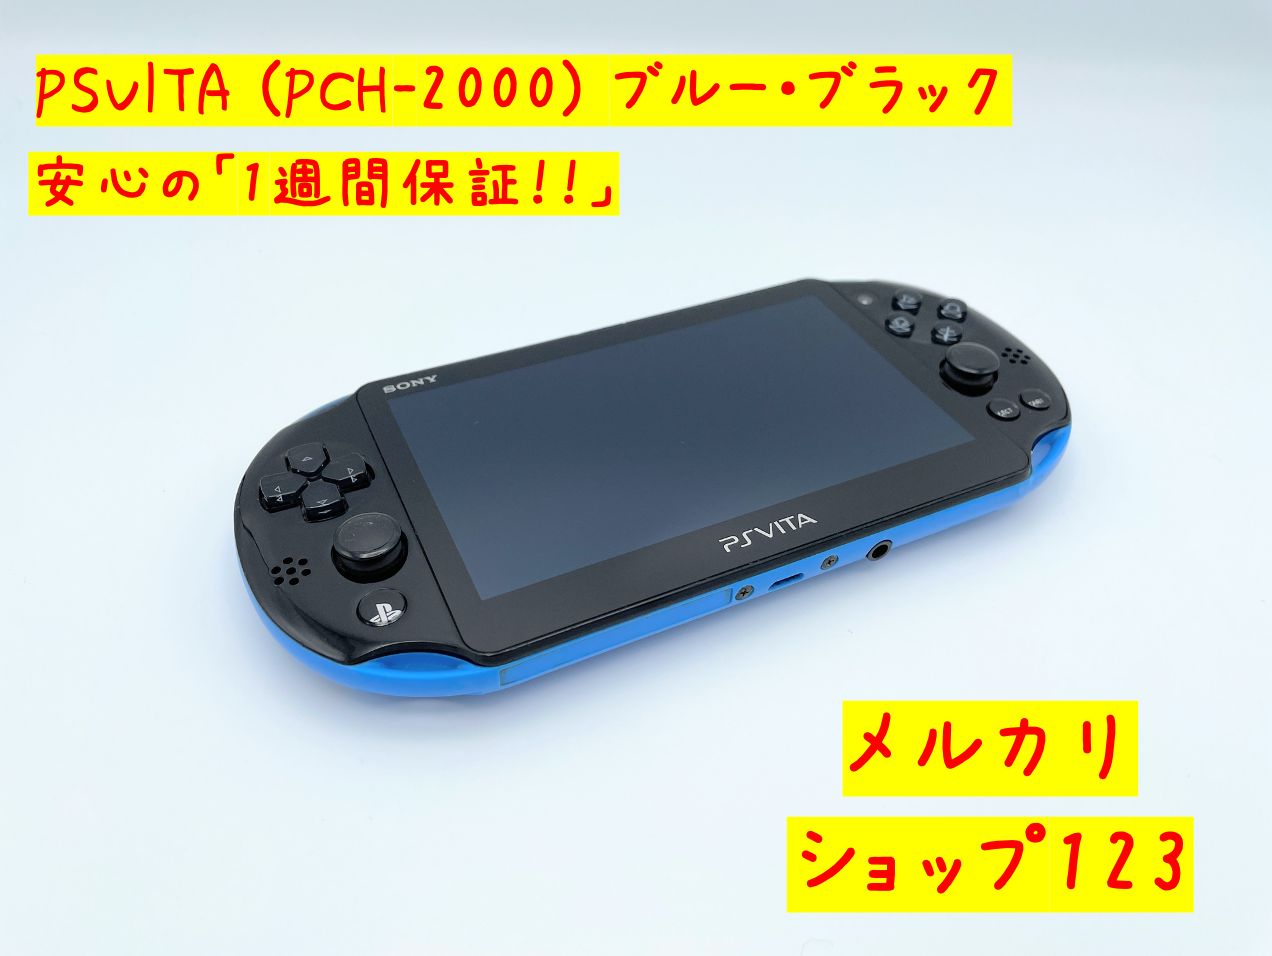 PSVITA 本体 Wi-Fiモデル ブルー・ブラック (PCH-2000)